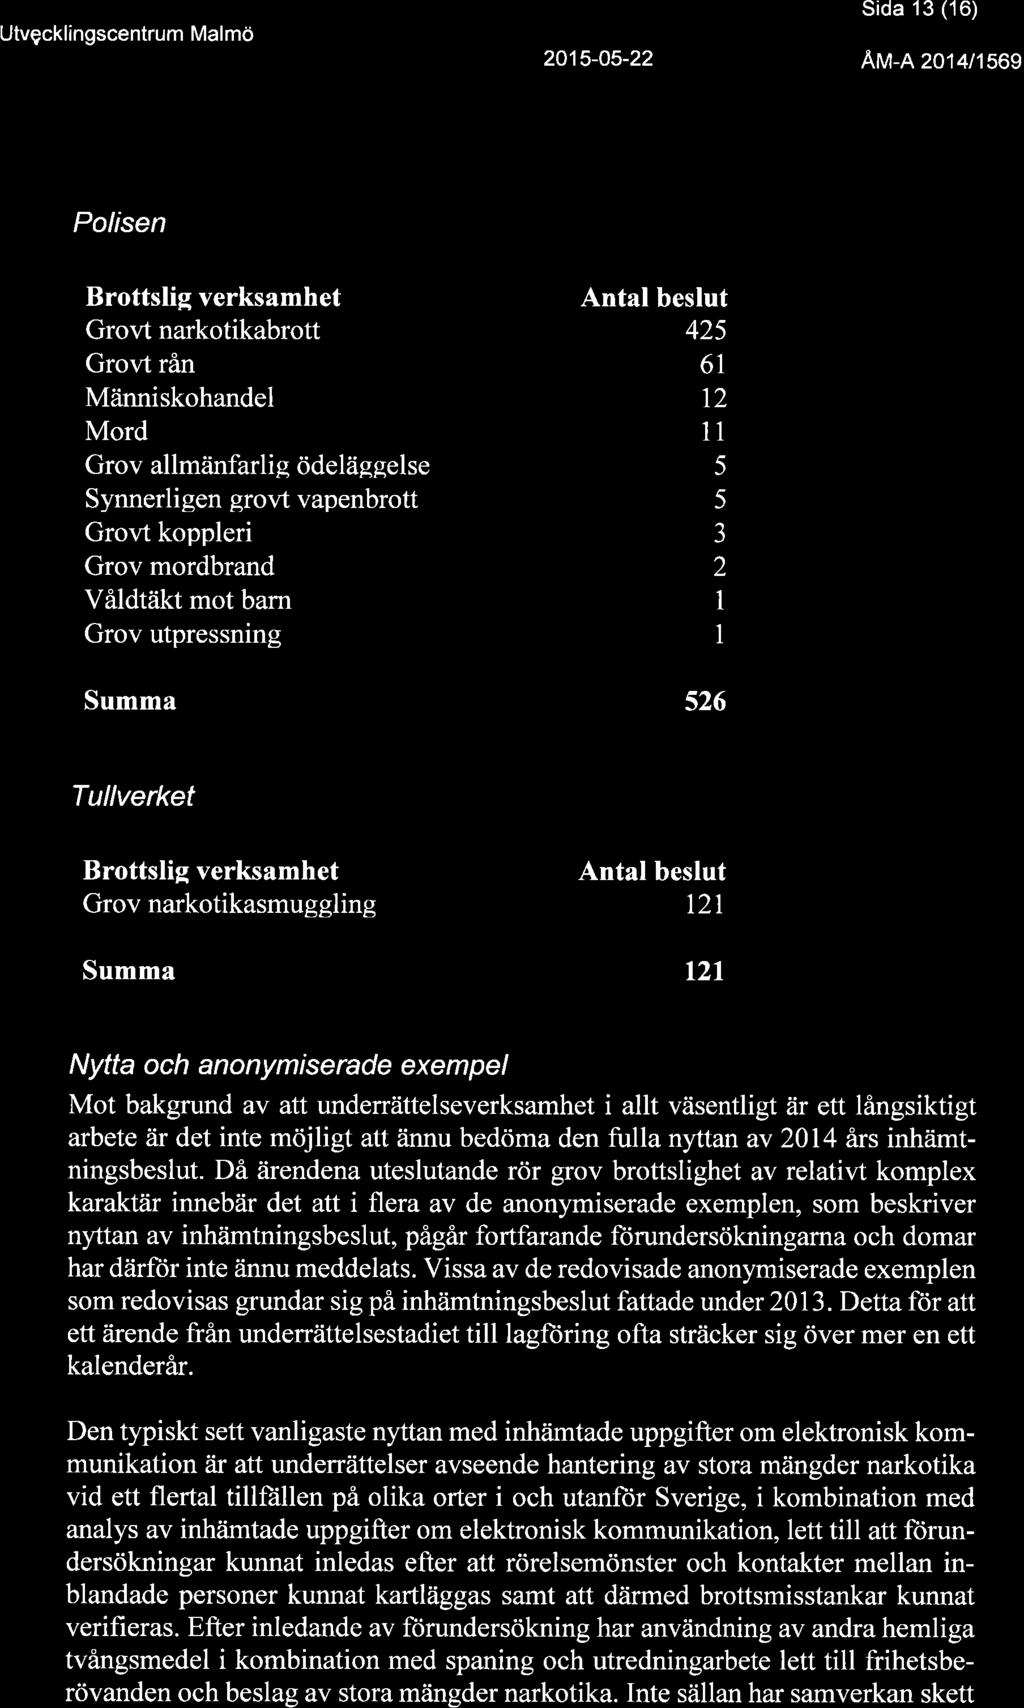 Utvçcklingscentrum Malmö Sida 13 ('16) Au-n zor lrsog Polisen Brottslig verksamhet Antal beslut Grovt narkotikabrott 425 Grovt rån 6I Människohandel t2 Mord 11 Grov allmänfarlig ödeläggelse 5